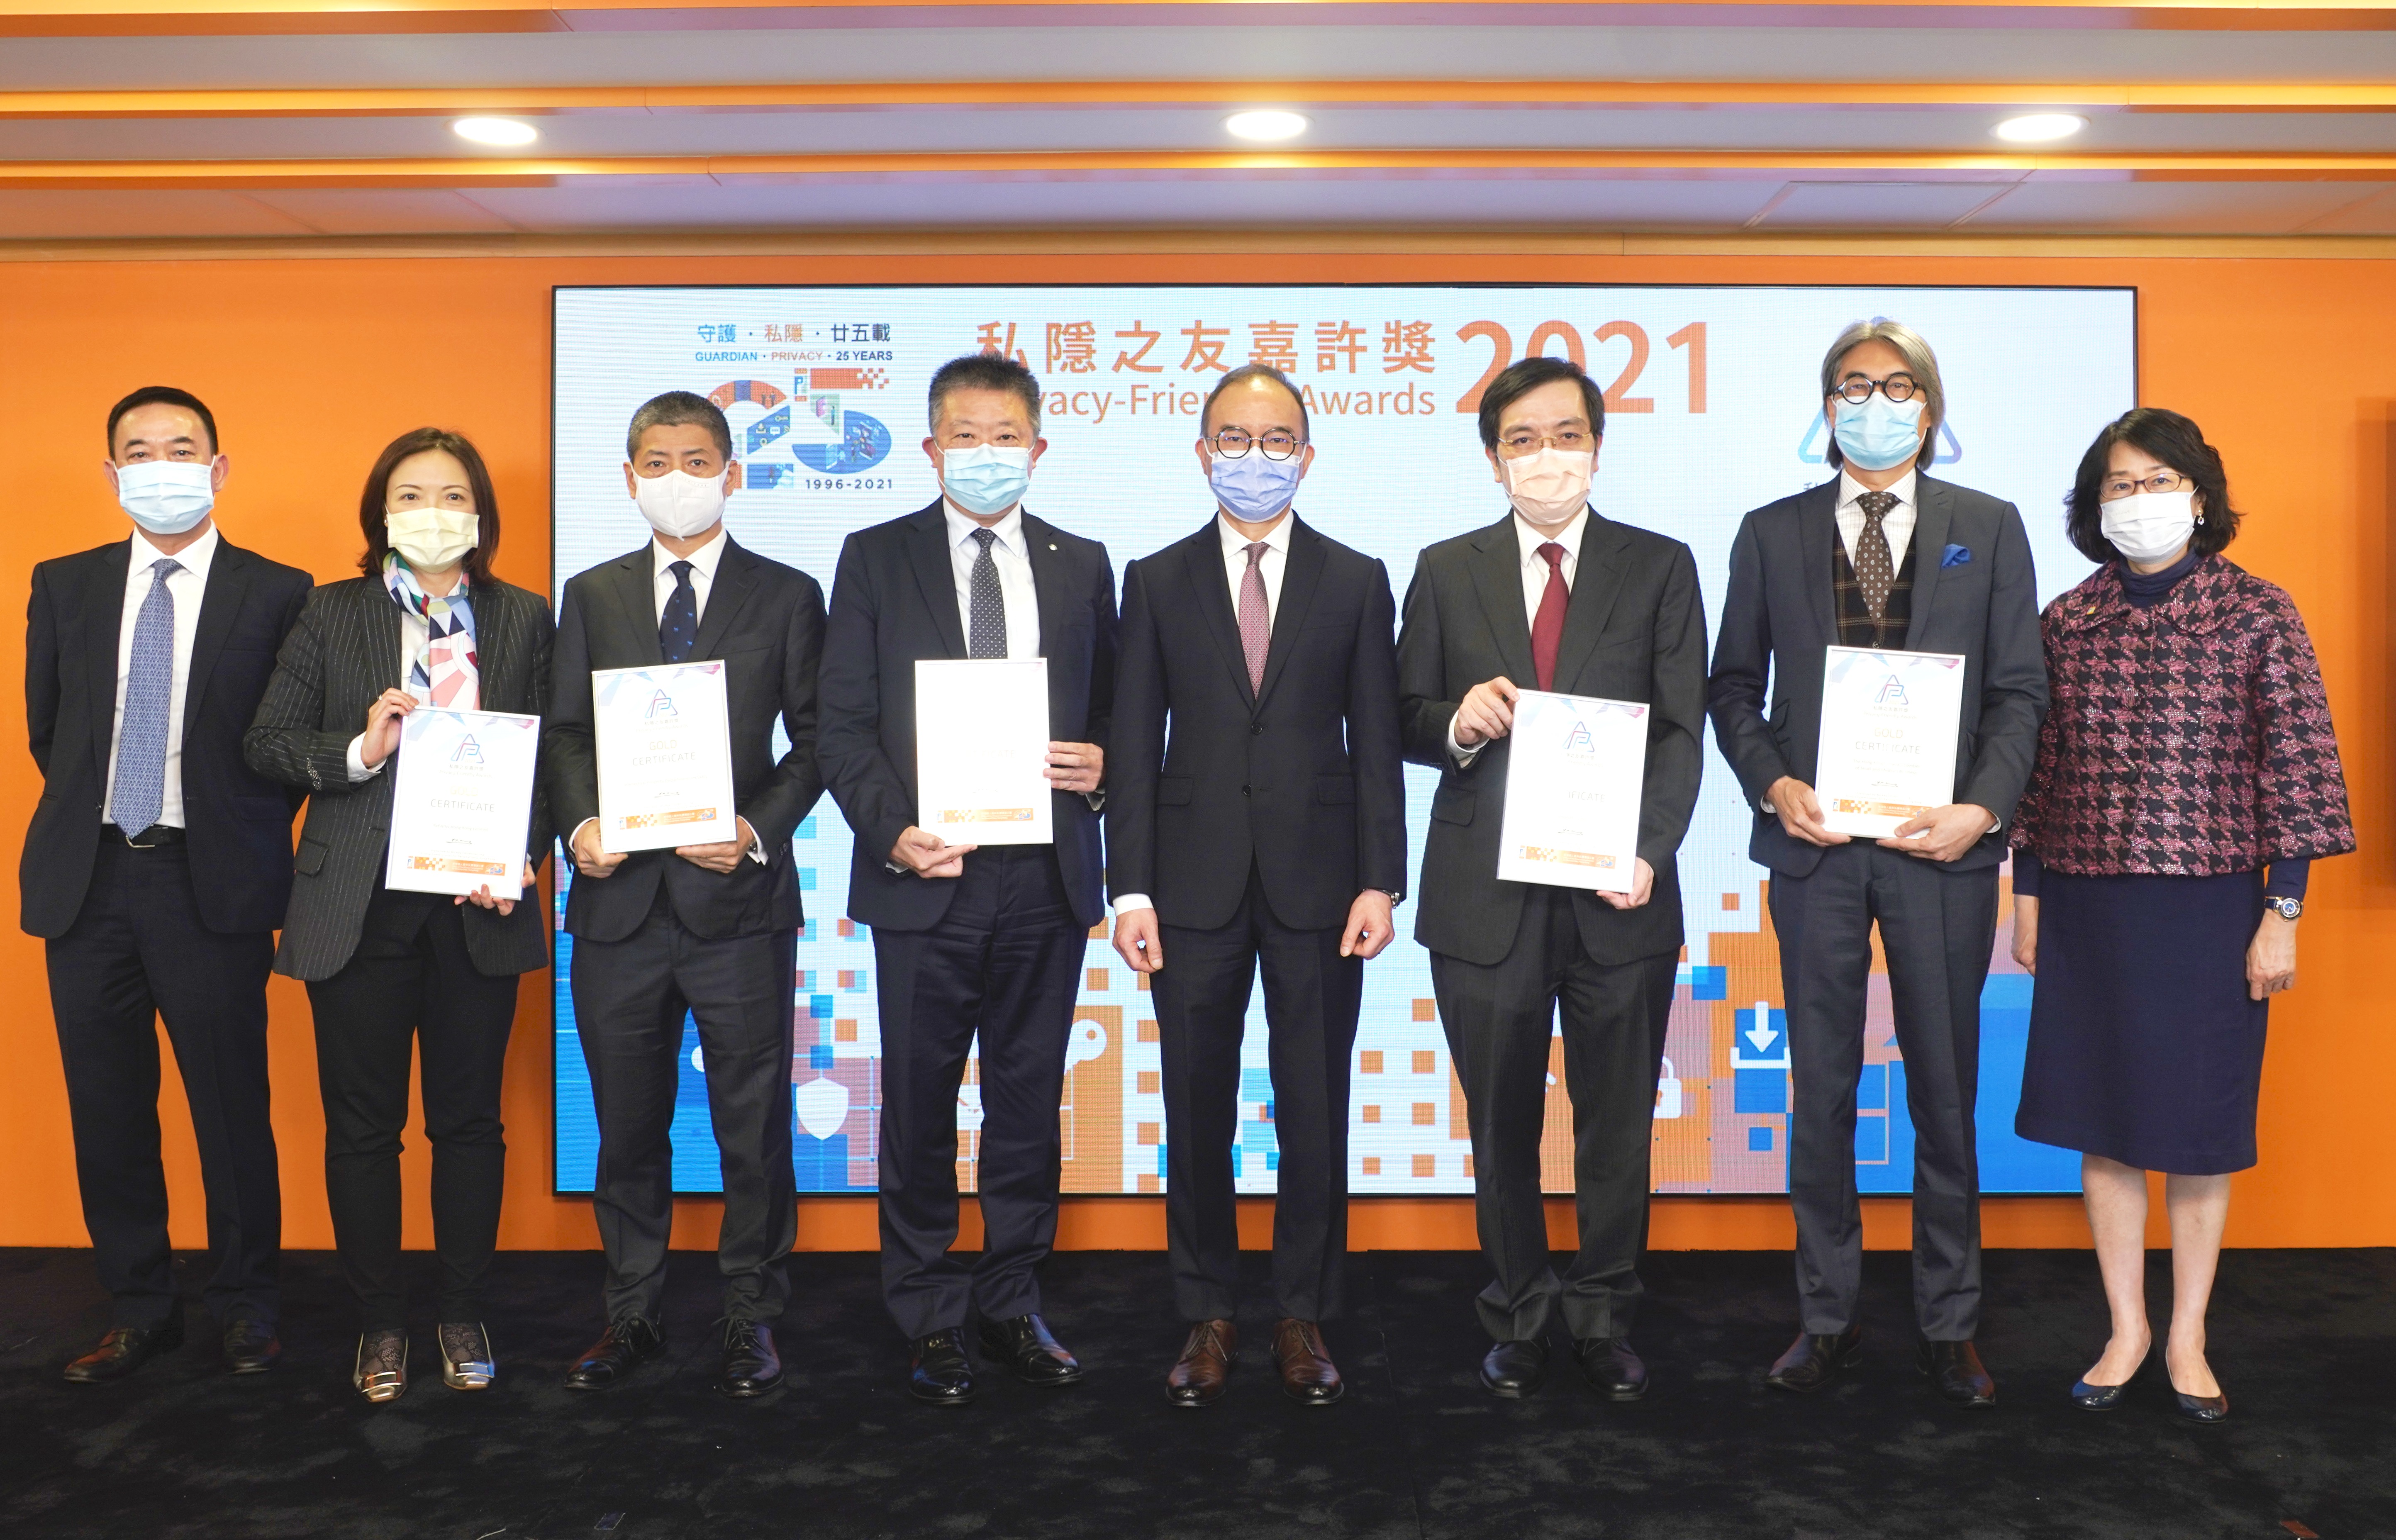 平機會主席朱敏健先生與其他得獎機構代表在頒獎禮上合照